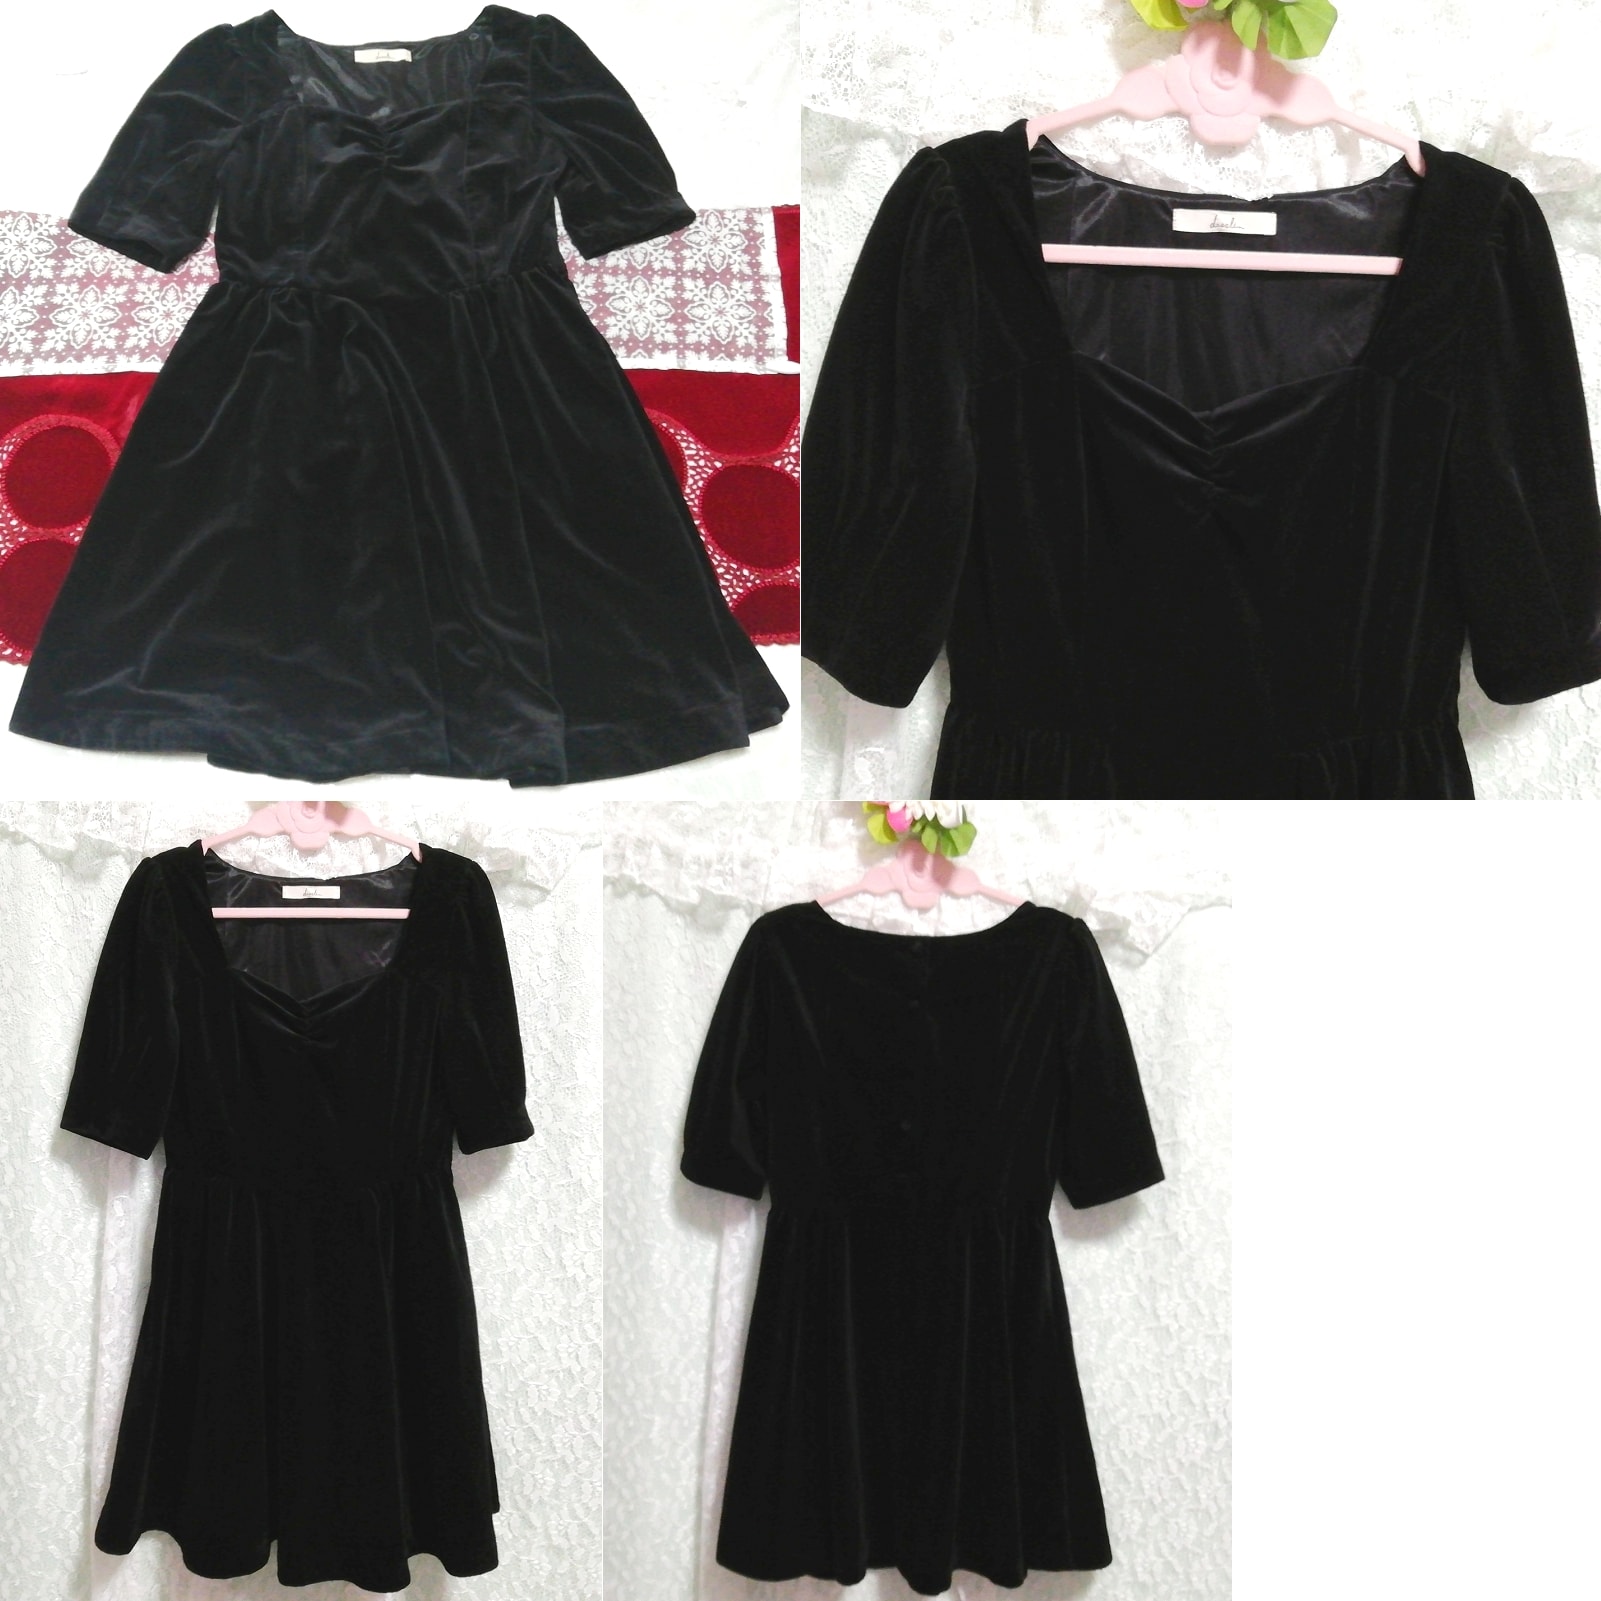 블랙 벨루어 샤이니 네글리제 나이트가운 원피스 드레스, 튜닉, 짧은 소매, m 사이즈